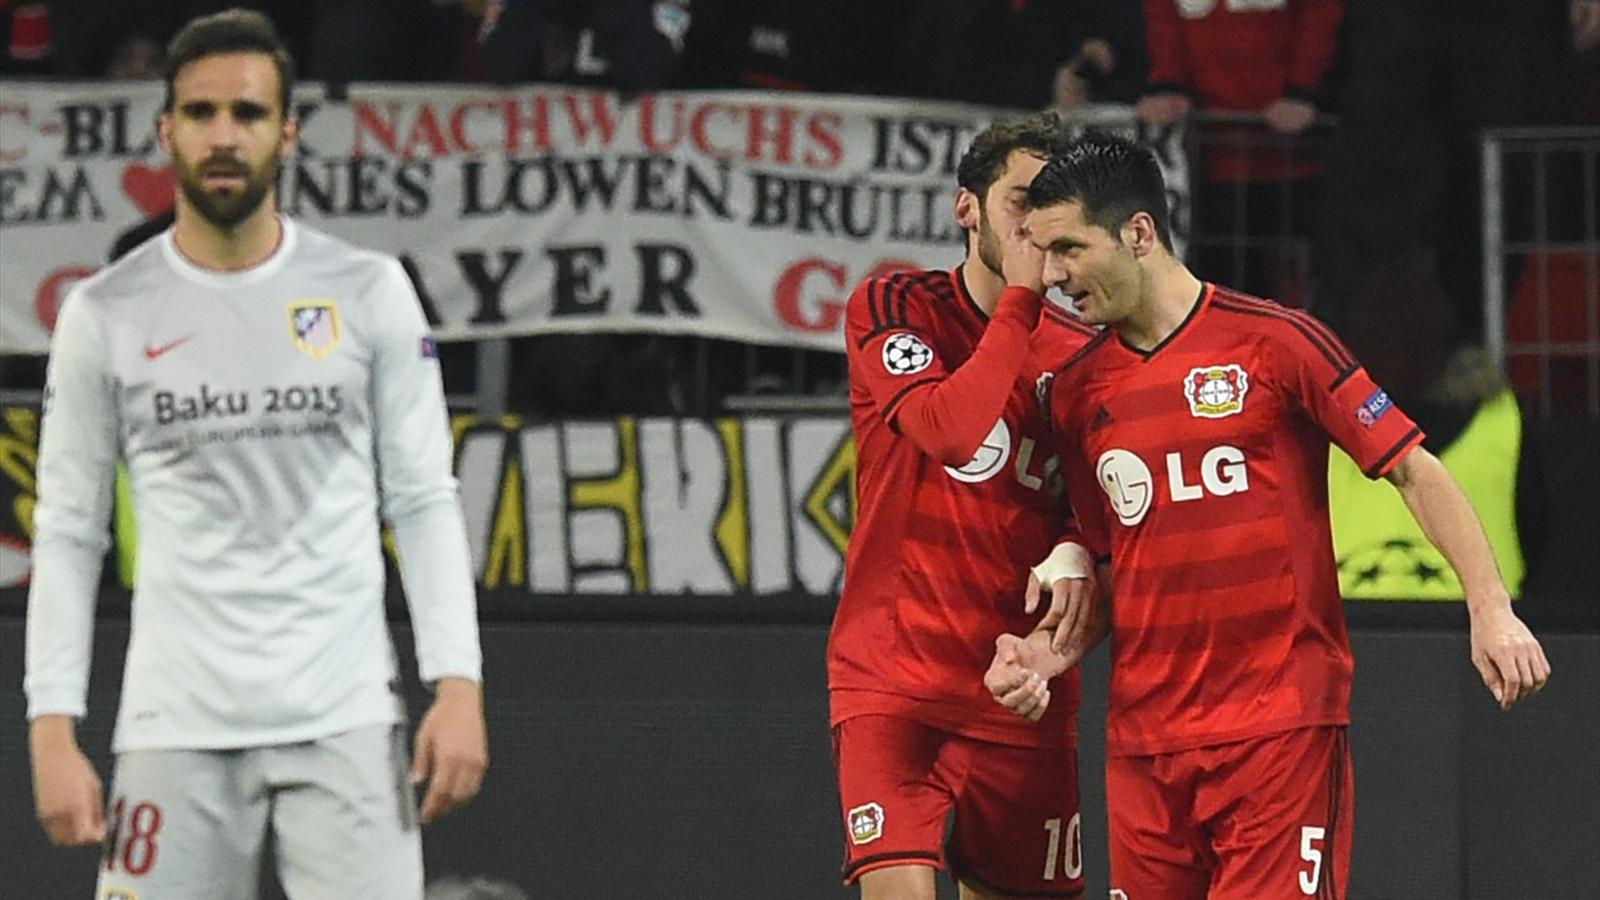 Ligue des champions, Leverkusen - Atlético (1-0) : L'Atlético a vécu une sale soirée